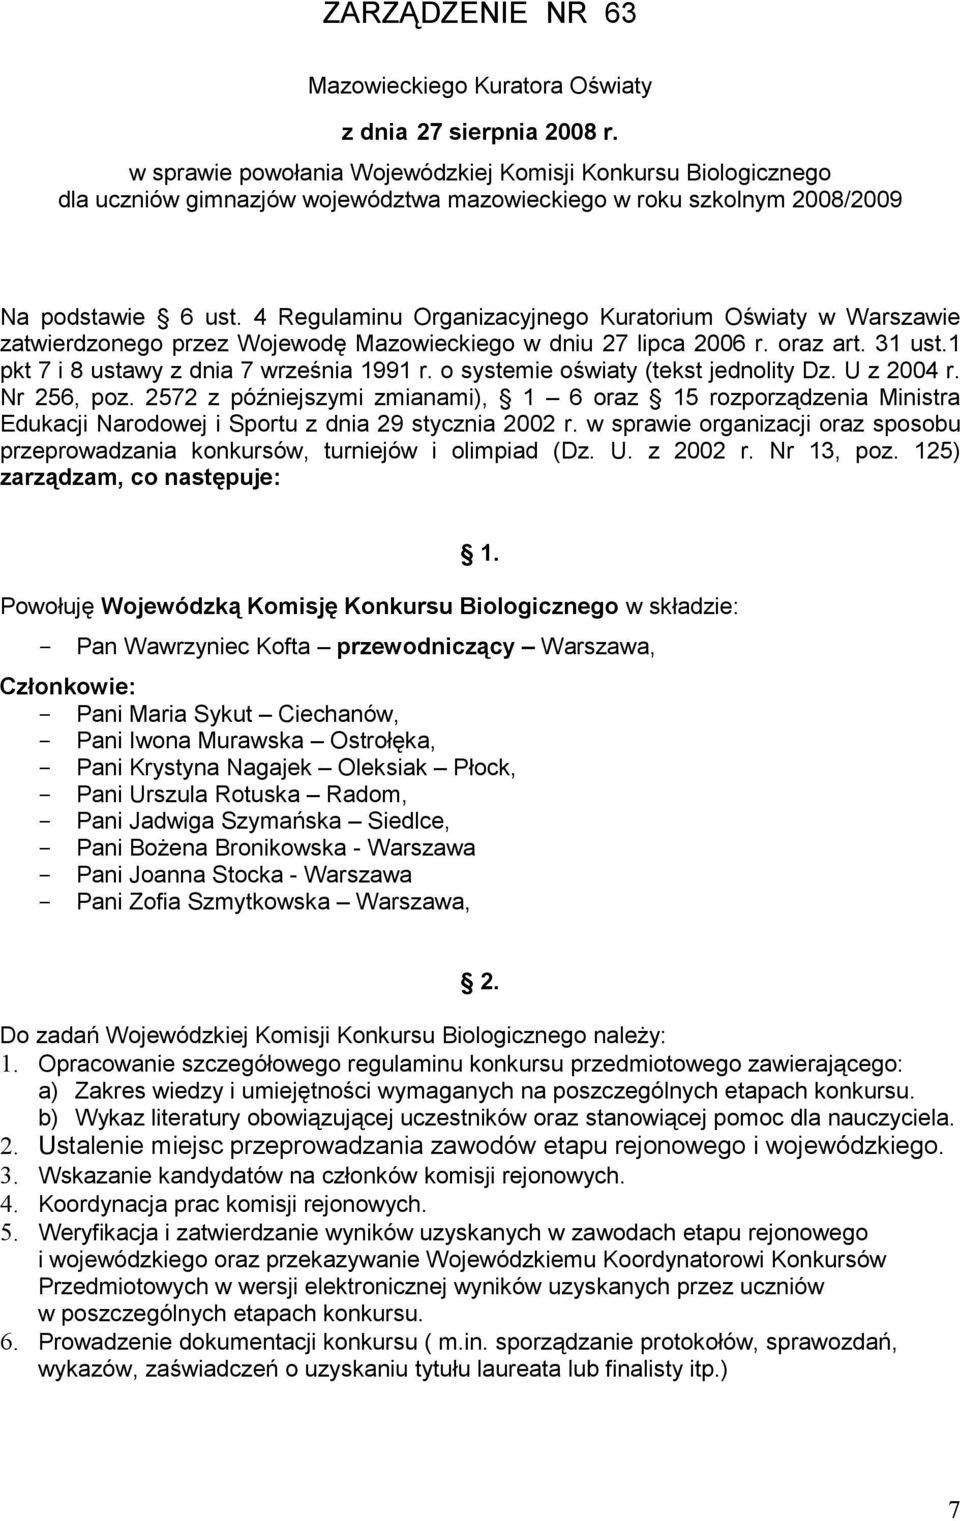 4 Regulaminu Organizacyjnego Kuratorium Oświaty w Warszawie zatwierdzonego przez Wojewodę Mazowieckiego w dniu 27 lipca 2006 r. oraz art. 31 ust.1 pkt 7 i 8 ustawy z dnia 7 września 1991 r.